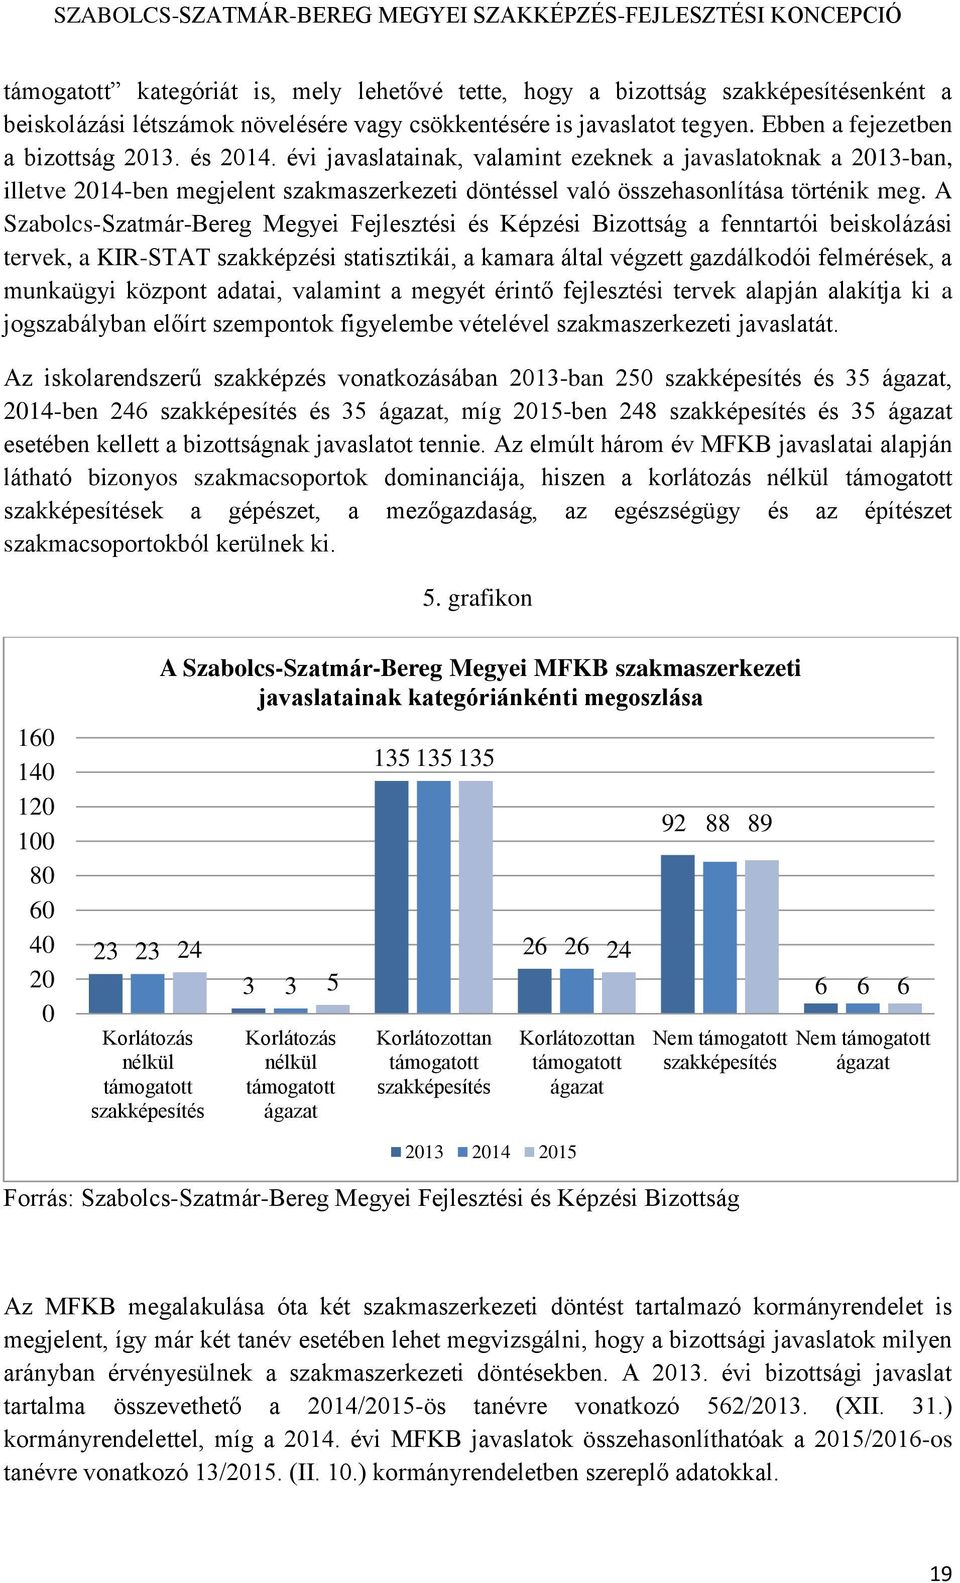 A Szabolcs-Szatmár-Bereg Megyei Fejlesztési és Képzési Bizottság a fenntartói beiskolázási tervek, a KIR-STAT szakképzési statisztikái, a kamara által végzett gazdálkodói felmérések, a munkaügyi